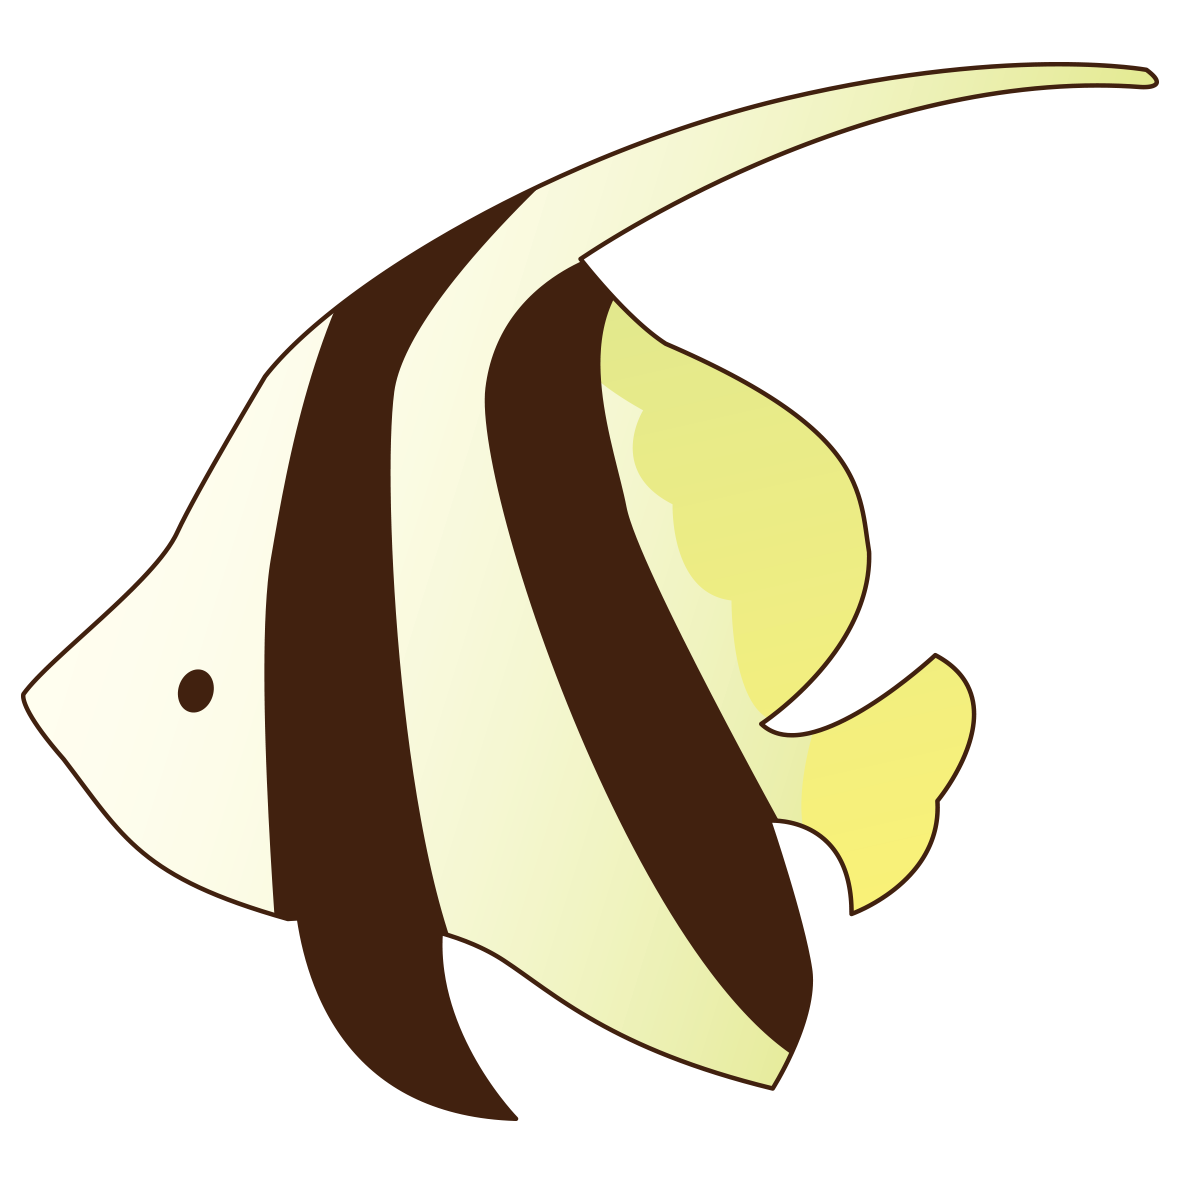 縞模様が特徴的な熱帯魚のイラストです。夏の海や水族館のイメージに使えそう。つぶらな瞳が可愛らしい魚です。